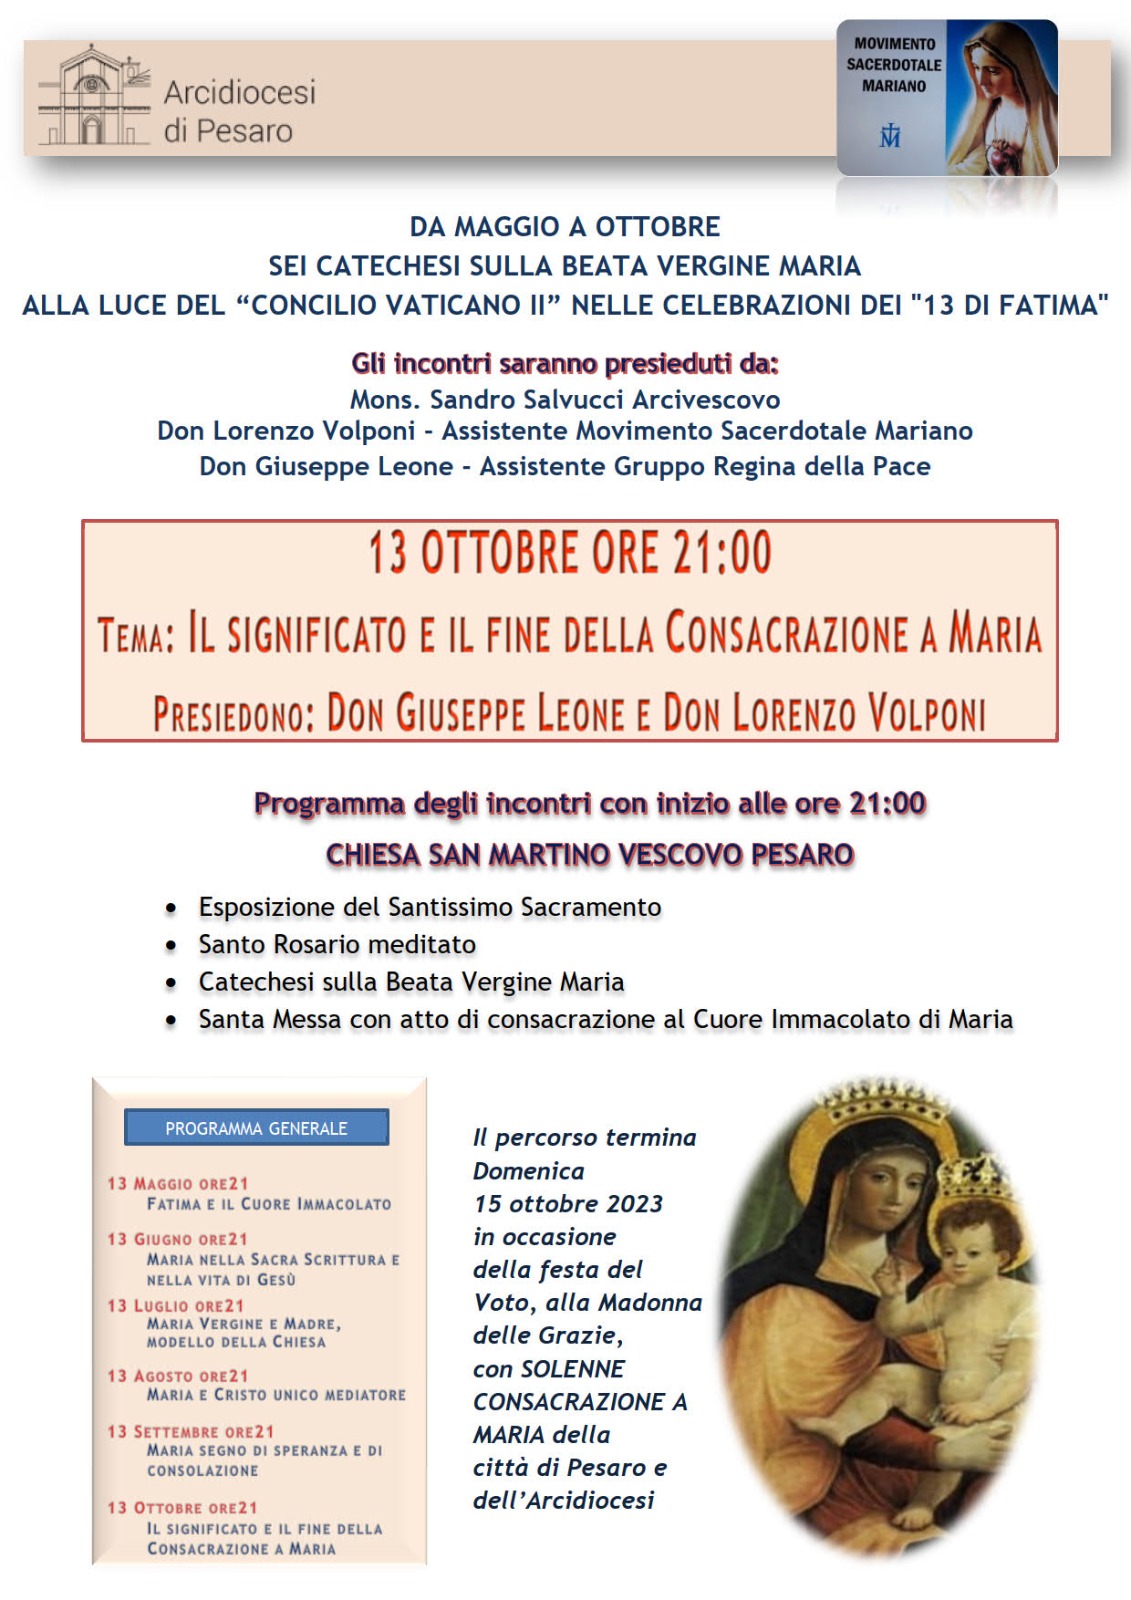 ULTIMA CATECHESI PRIMA DELLA CONSACRAZIONE DELLA CITTA’ A MARIA – Chiesa di S. Martino -13 ottobre 2023, ore 21.00